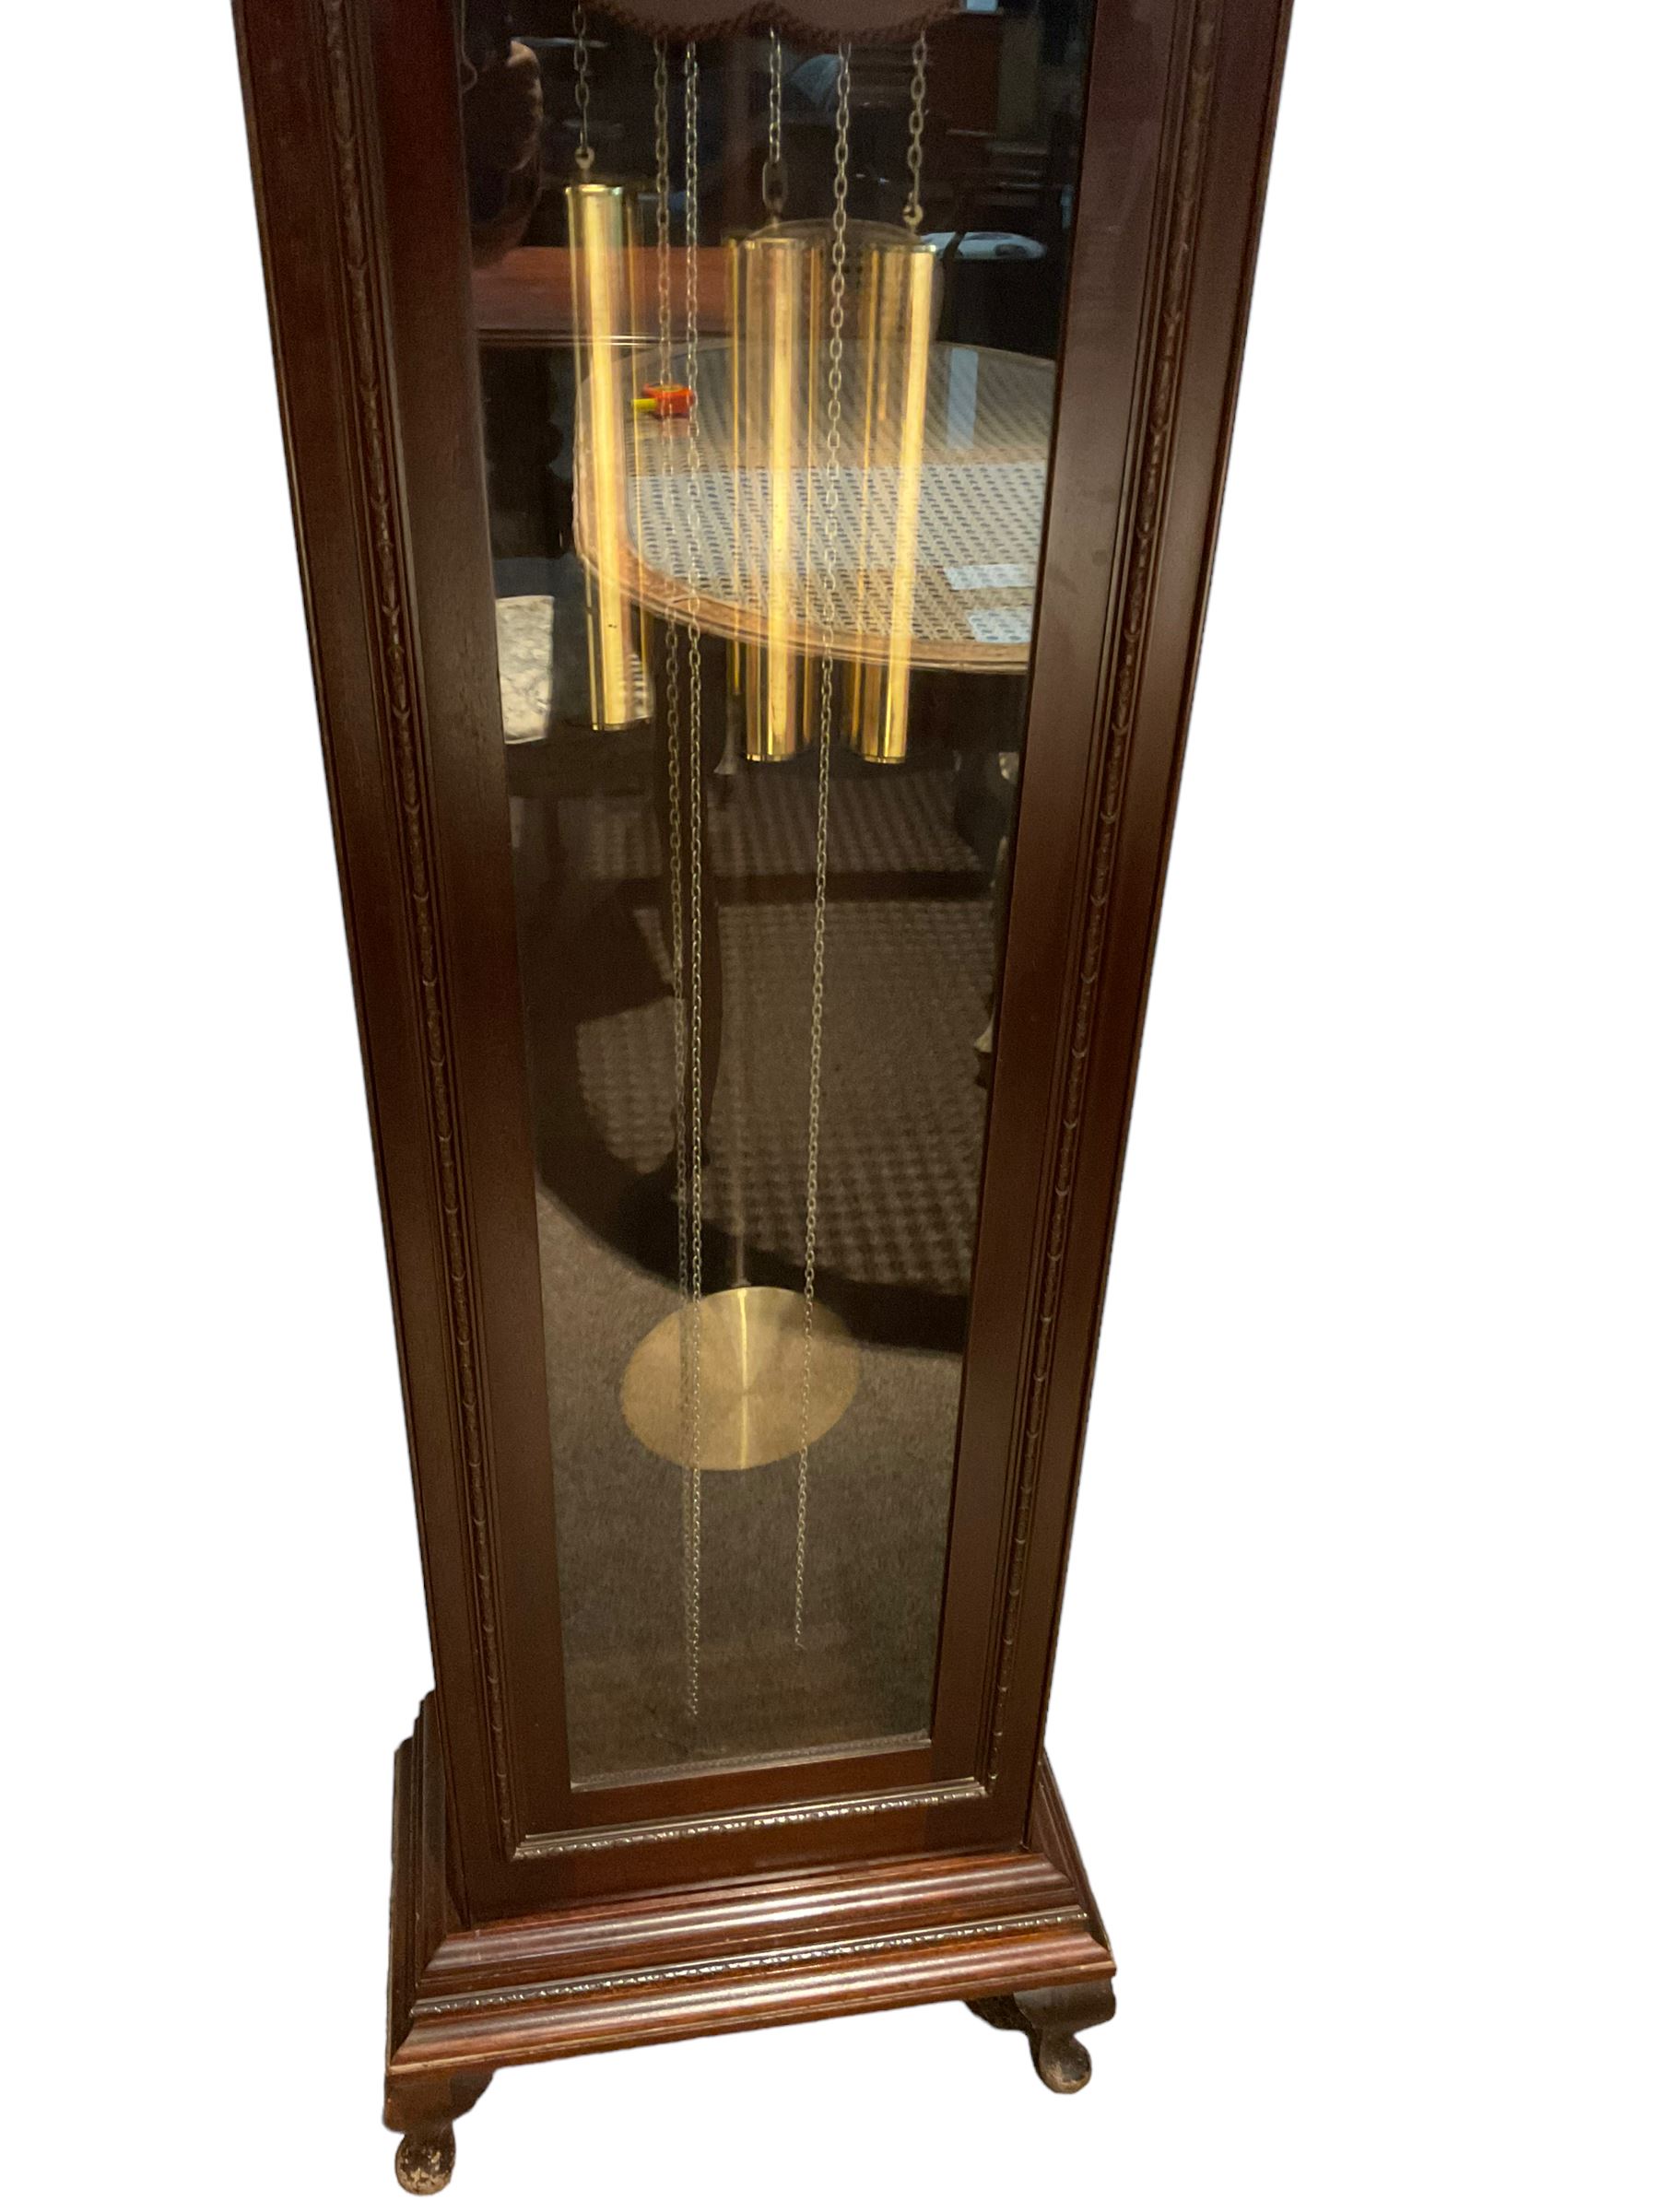 20th century - mahogany cased 8-day longcase clock - Image 3 of 4